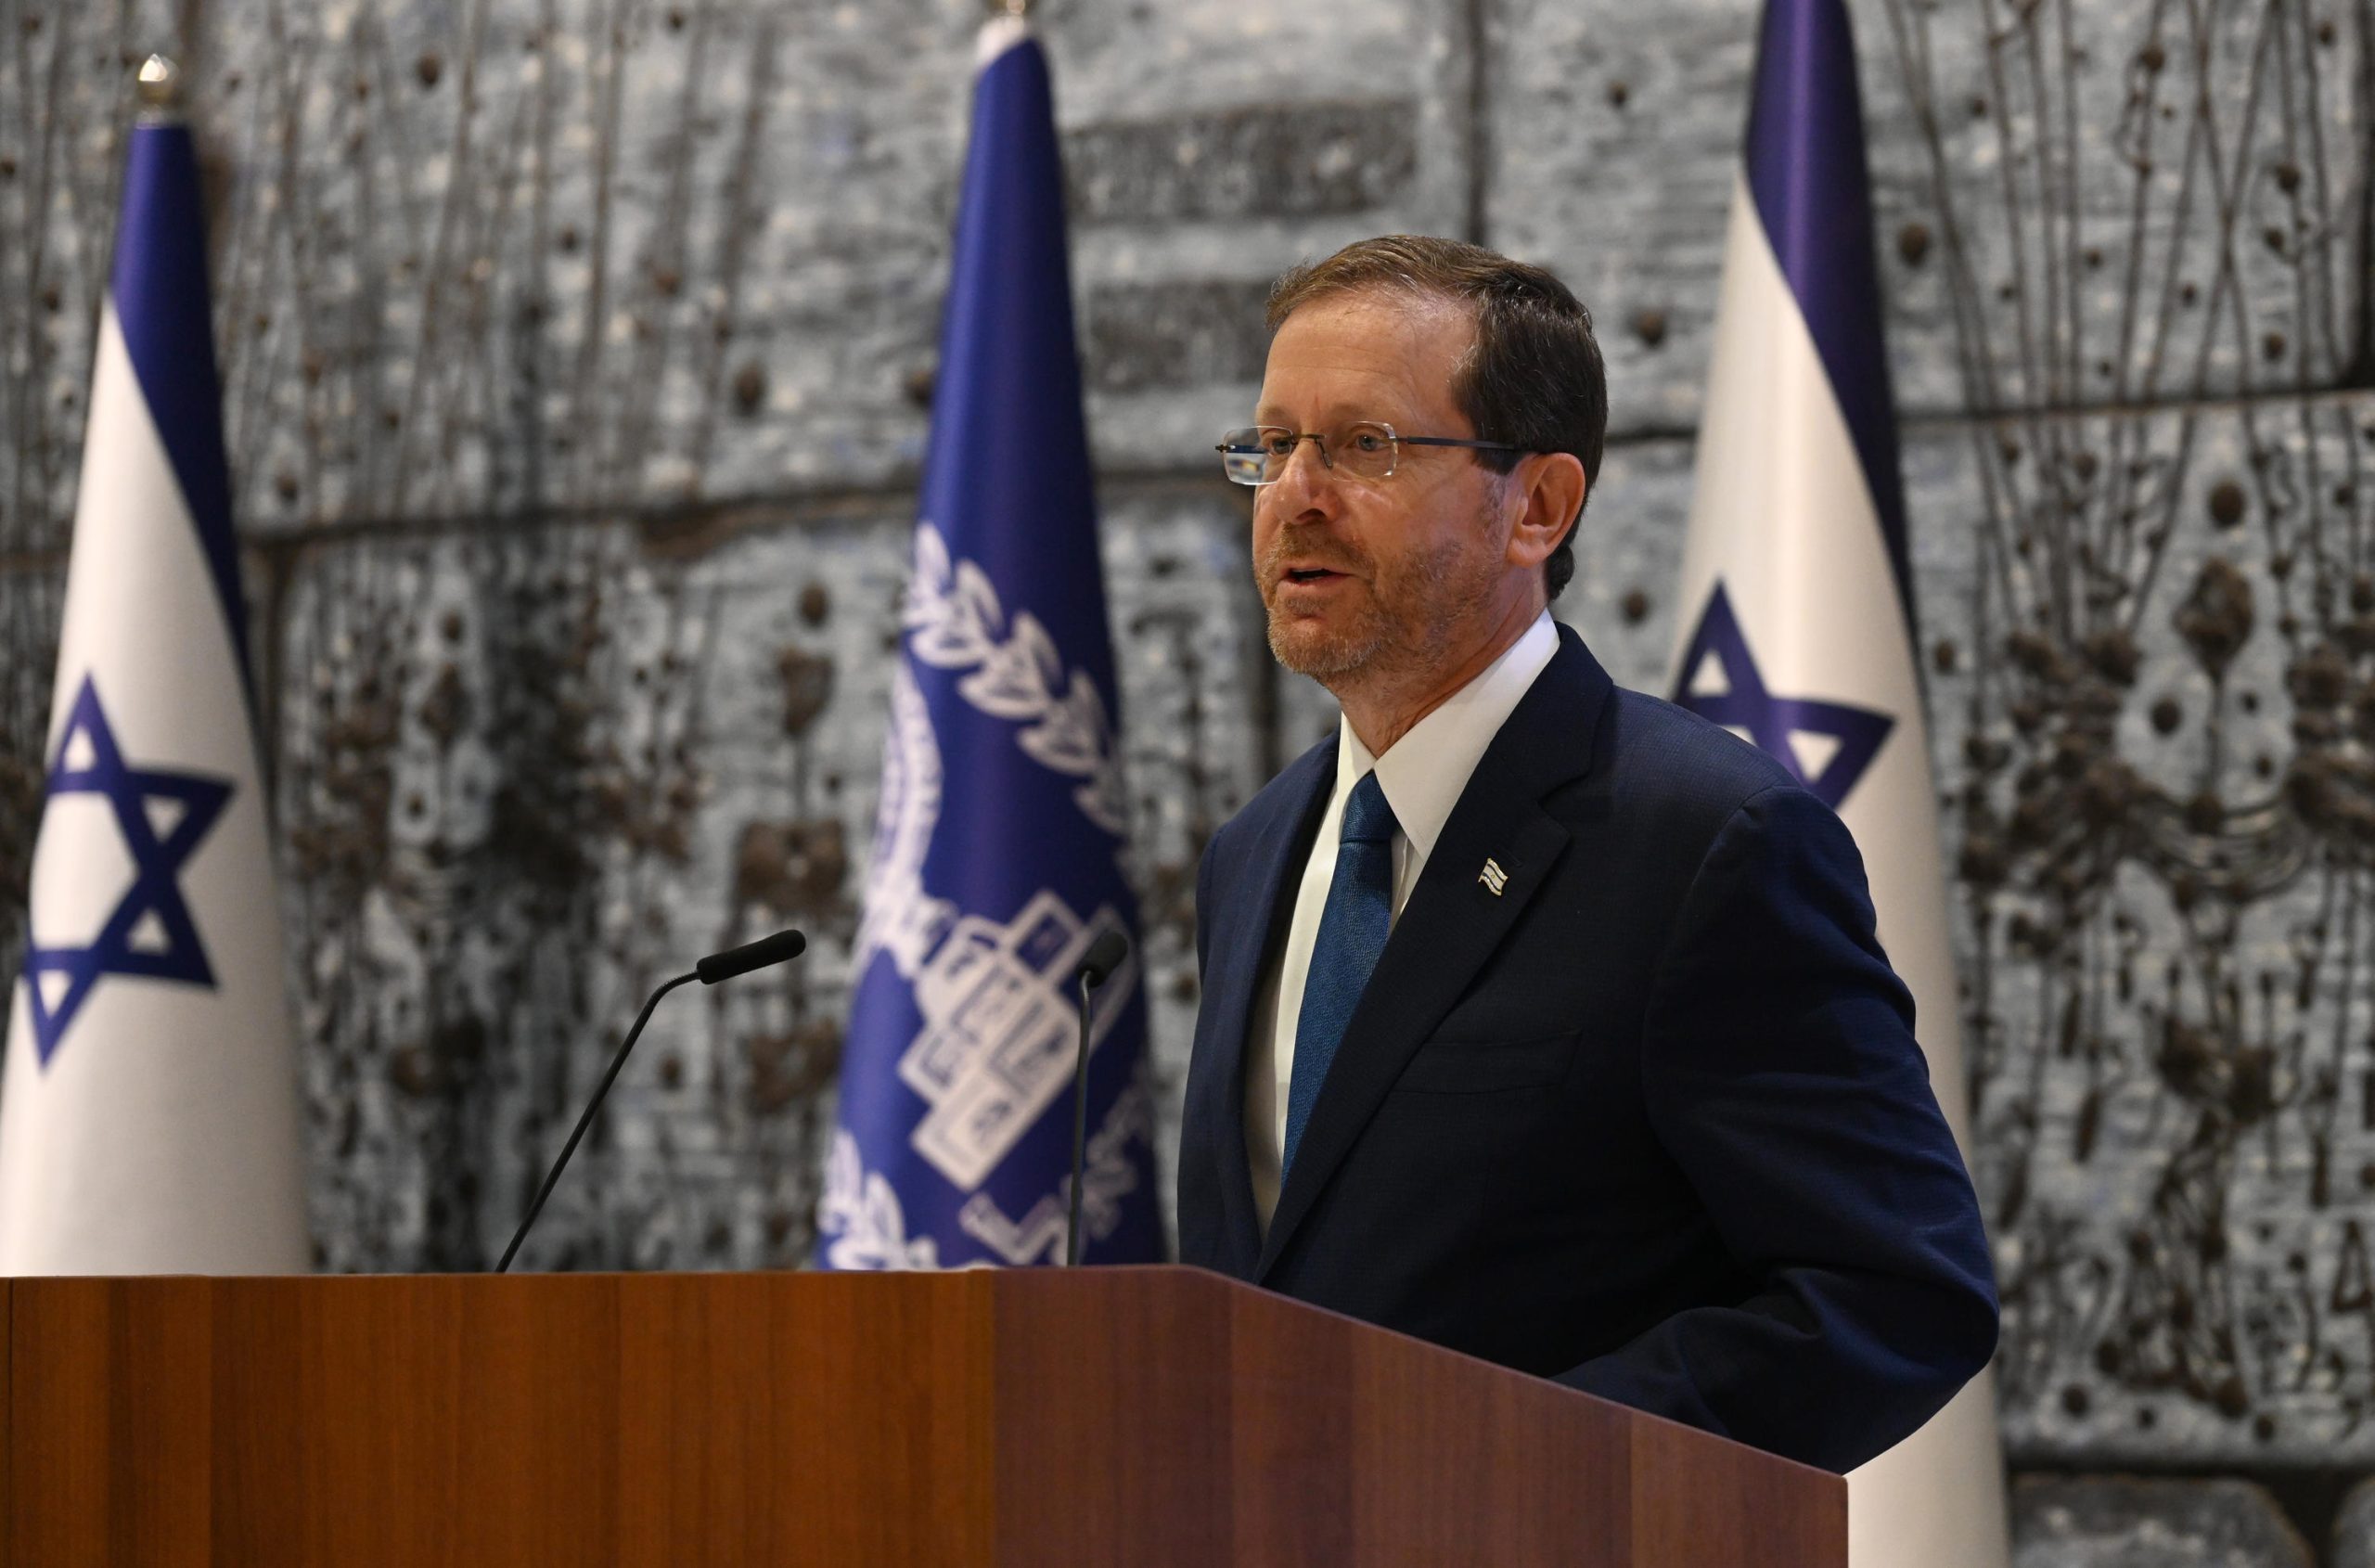 ביקור ראשון של נשיא ישראלי – בהזמנת מלך בחריין, נשיא המדינה יצא לביקור ממלכתי